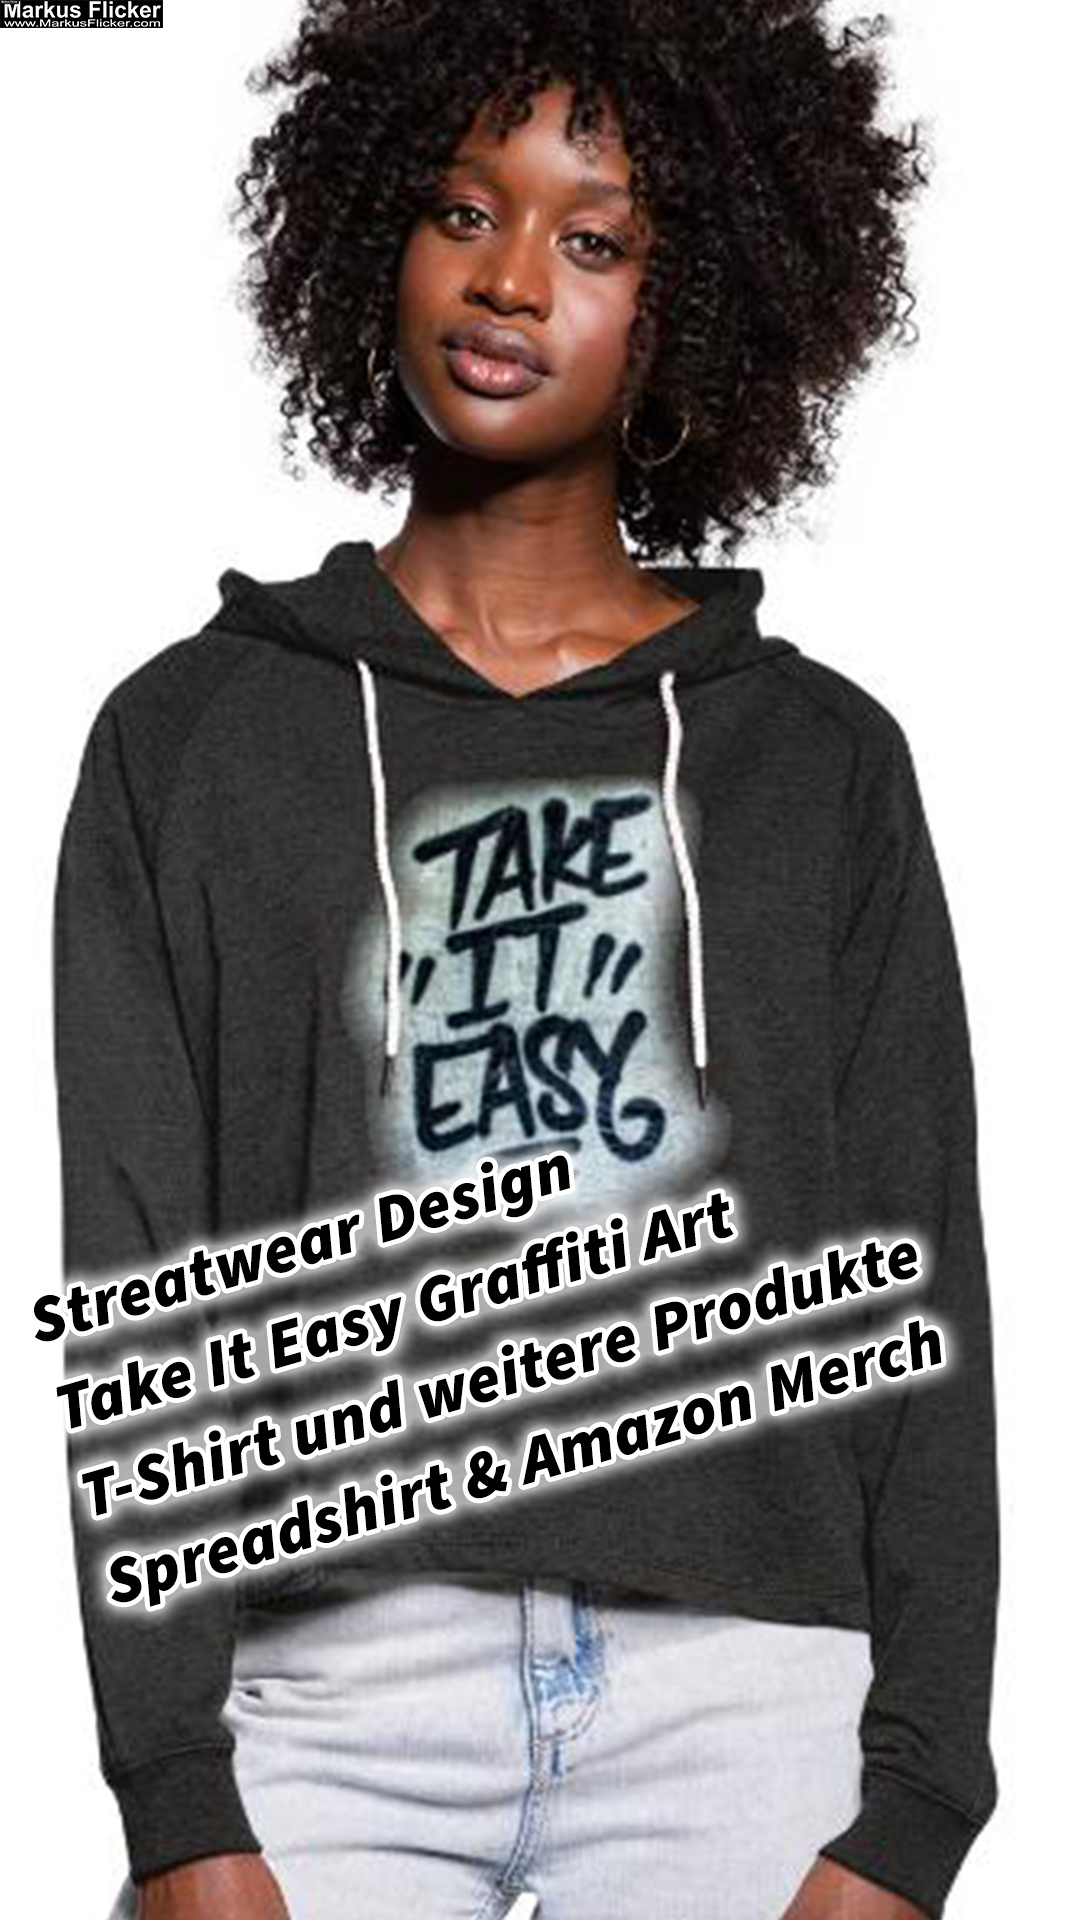 Streatwear Design Take It Easy Graffiti Art T-Shirt und weitere Produkte Spreadshirt & Amazon Merch